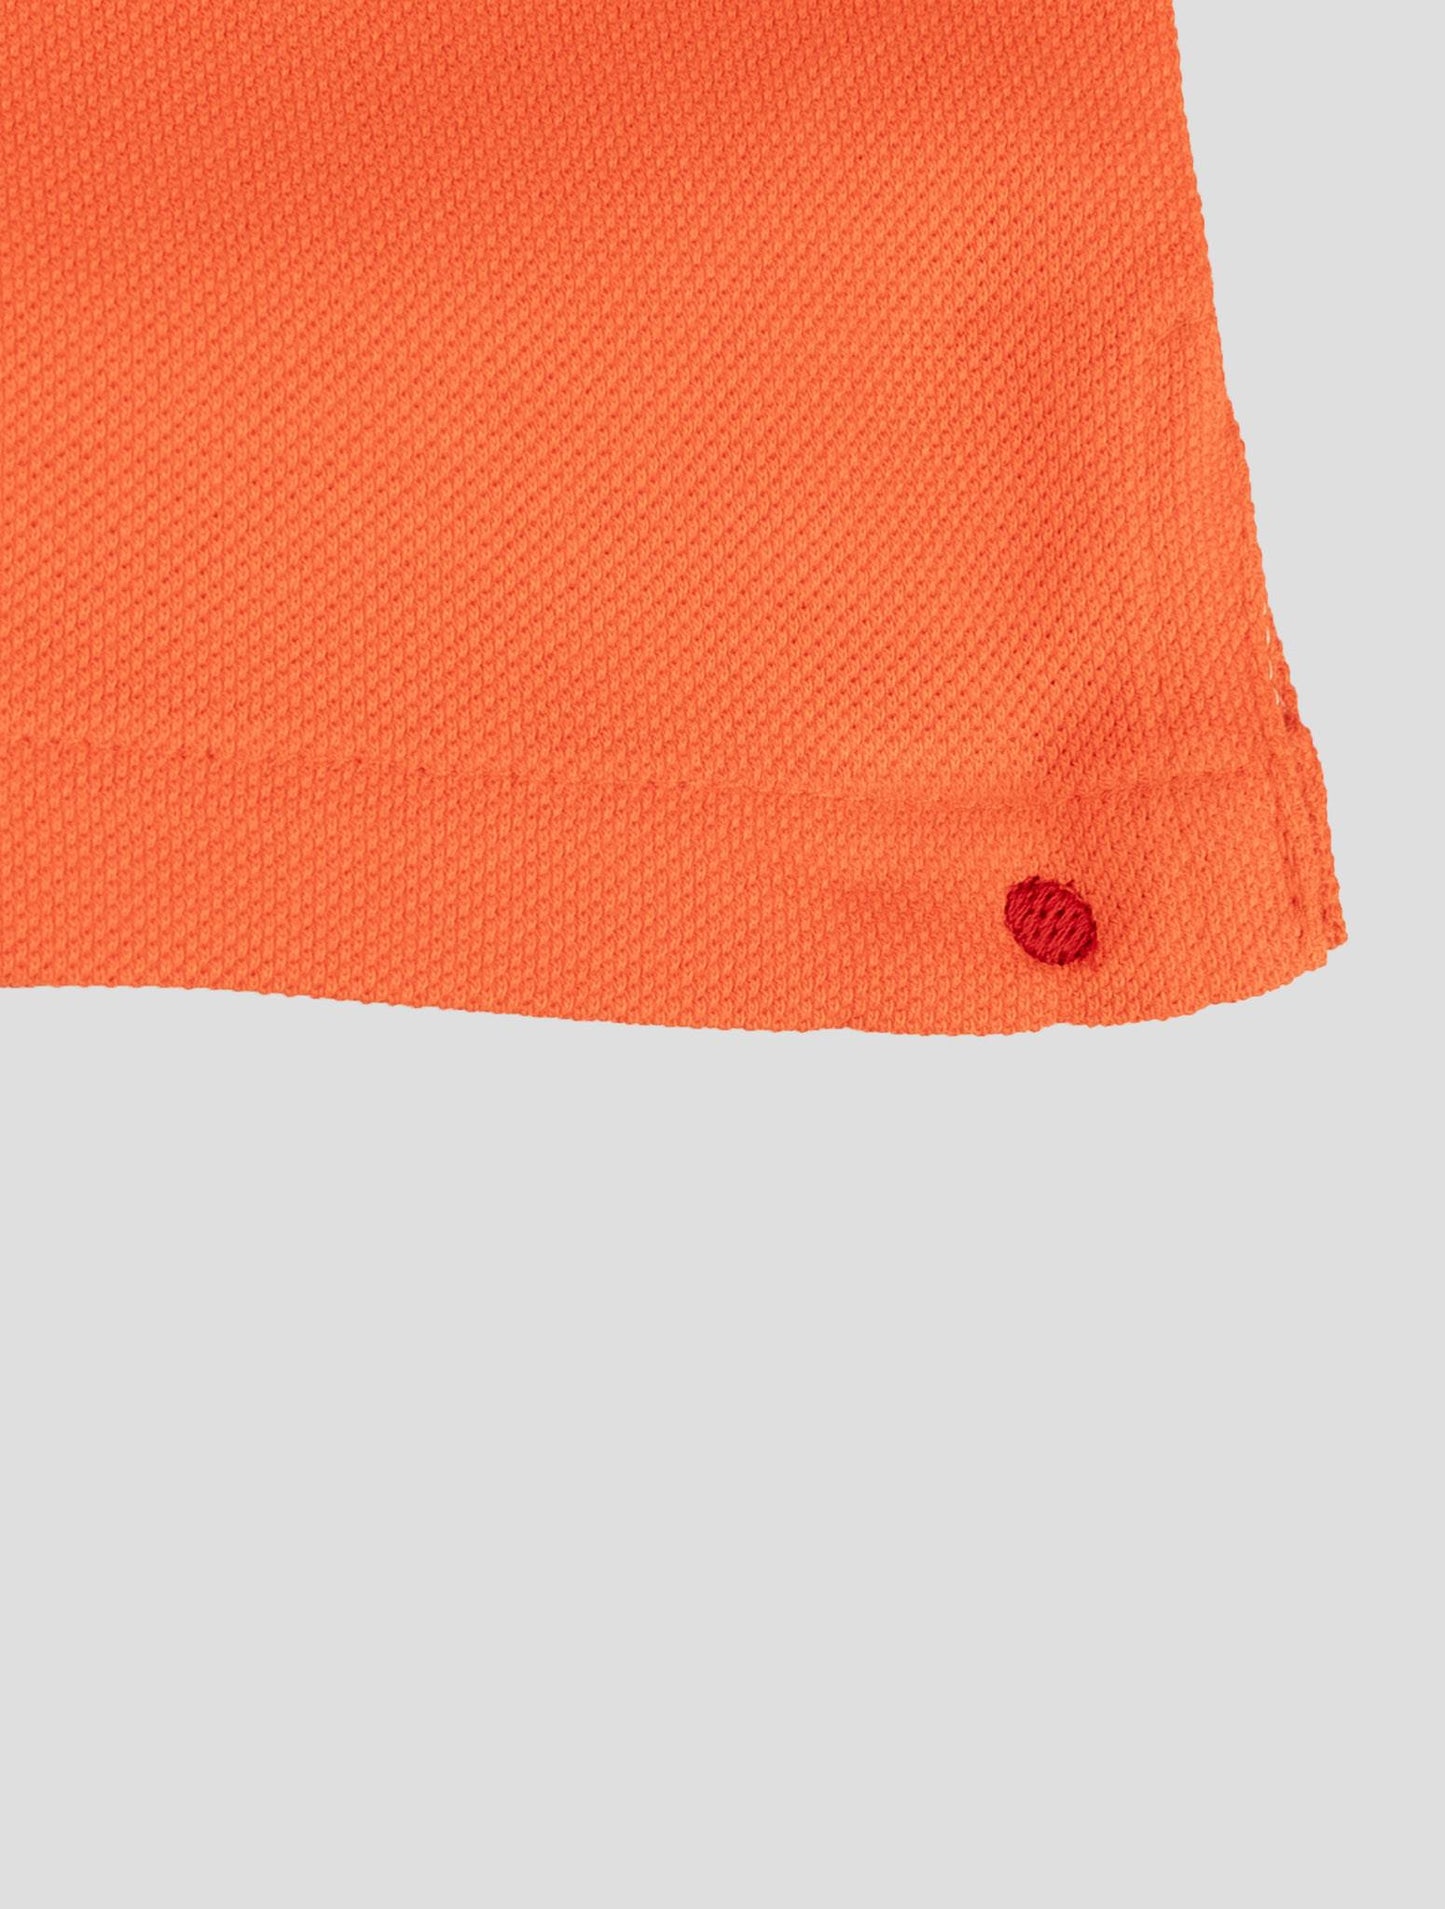 سروال قصير قطني برتقالي كيتو